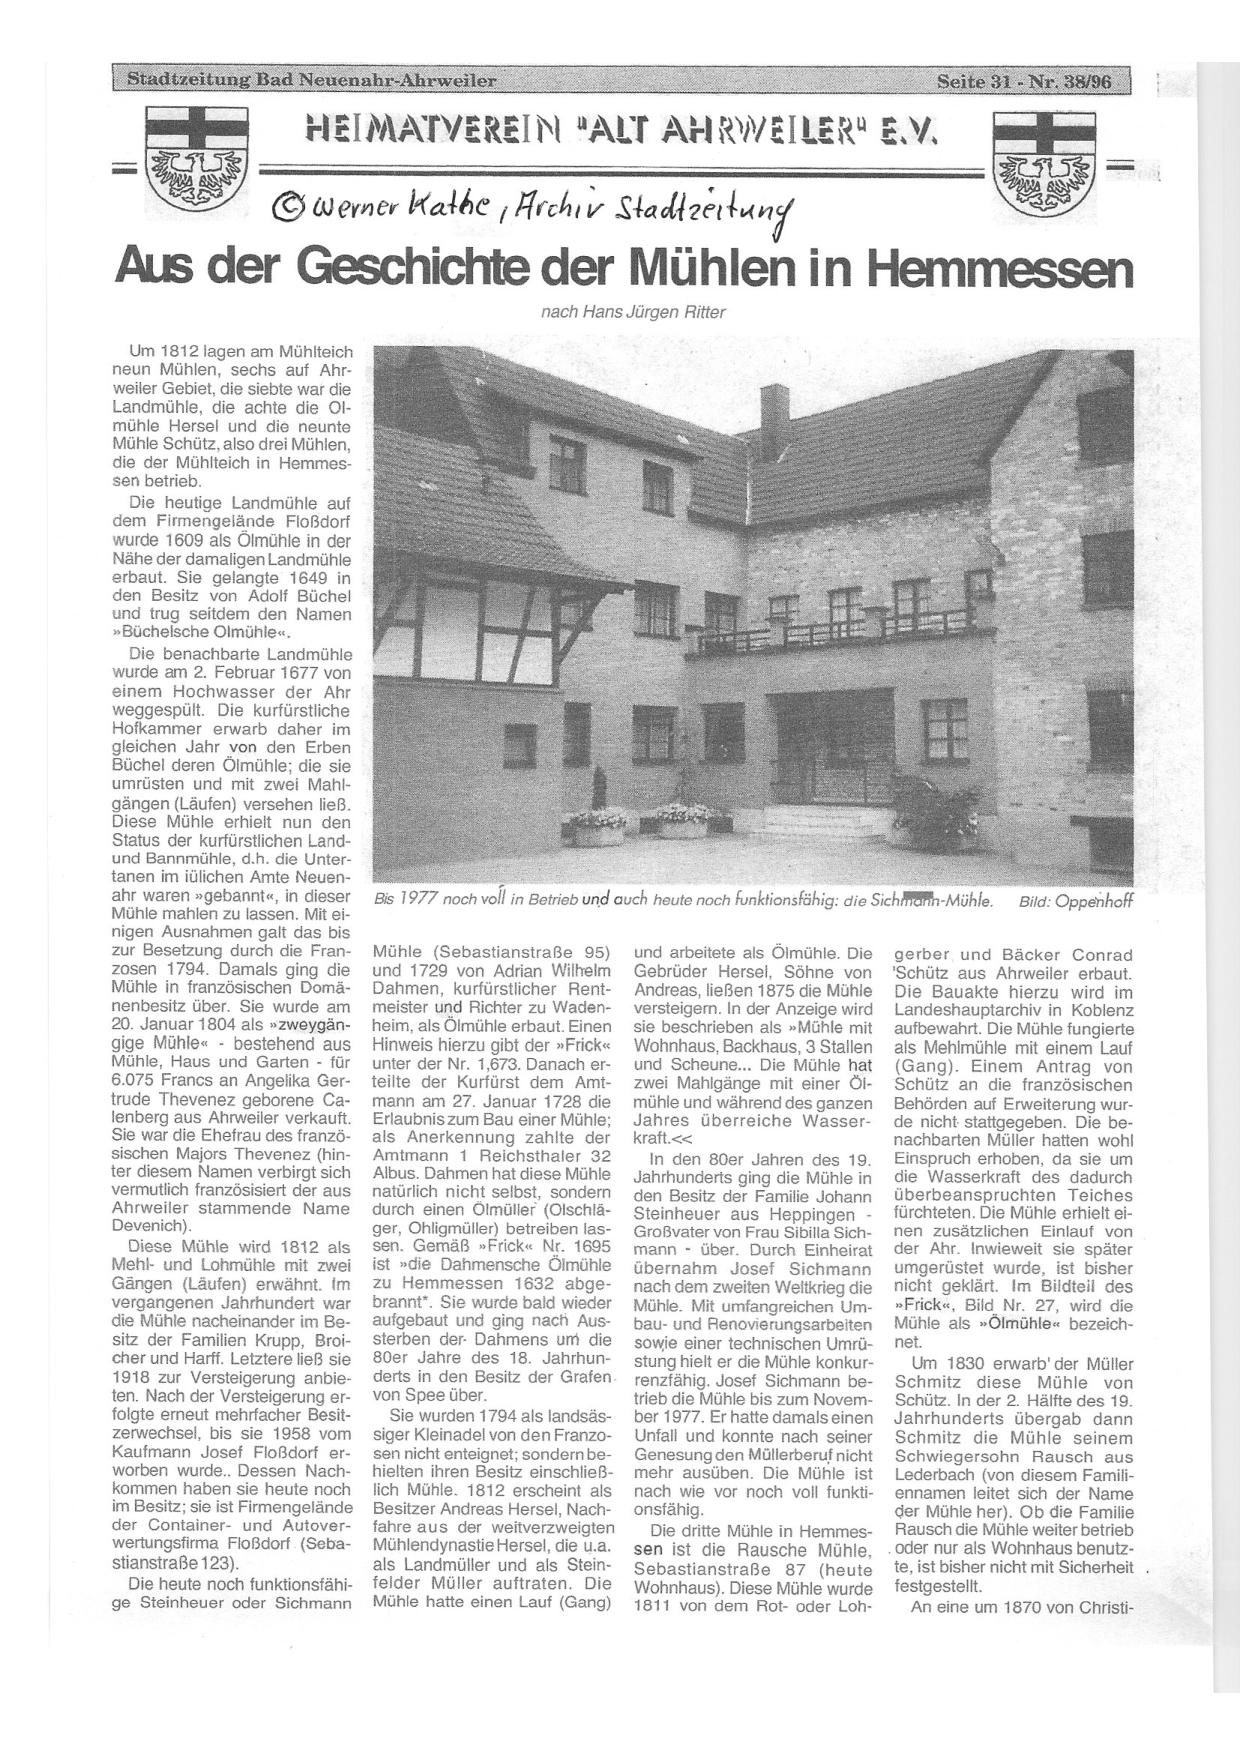 Im Anhang noch ein schöner Artikel der Stadtzeitung von 1996, freundlicherweise bereitgestellt von Werner Kathe